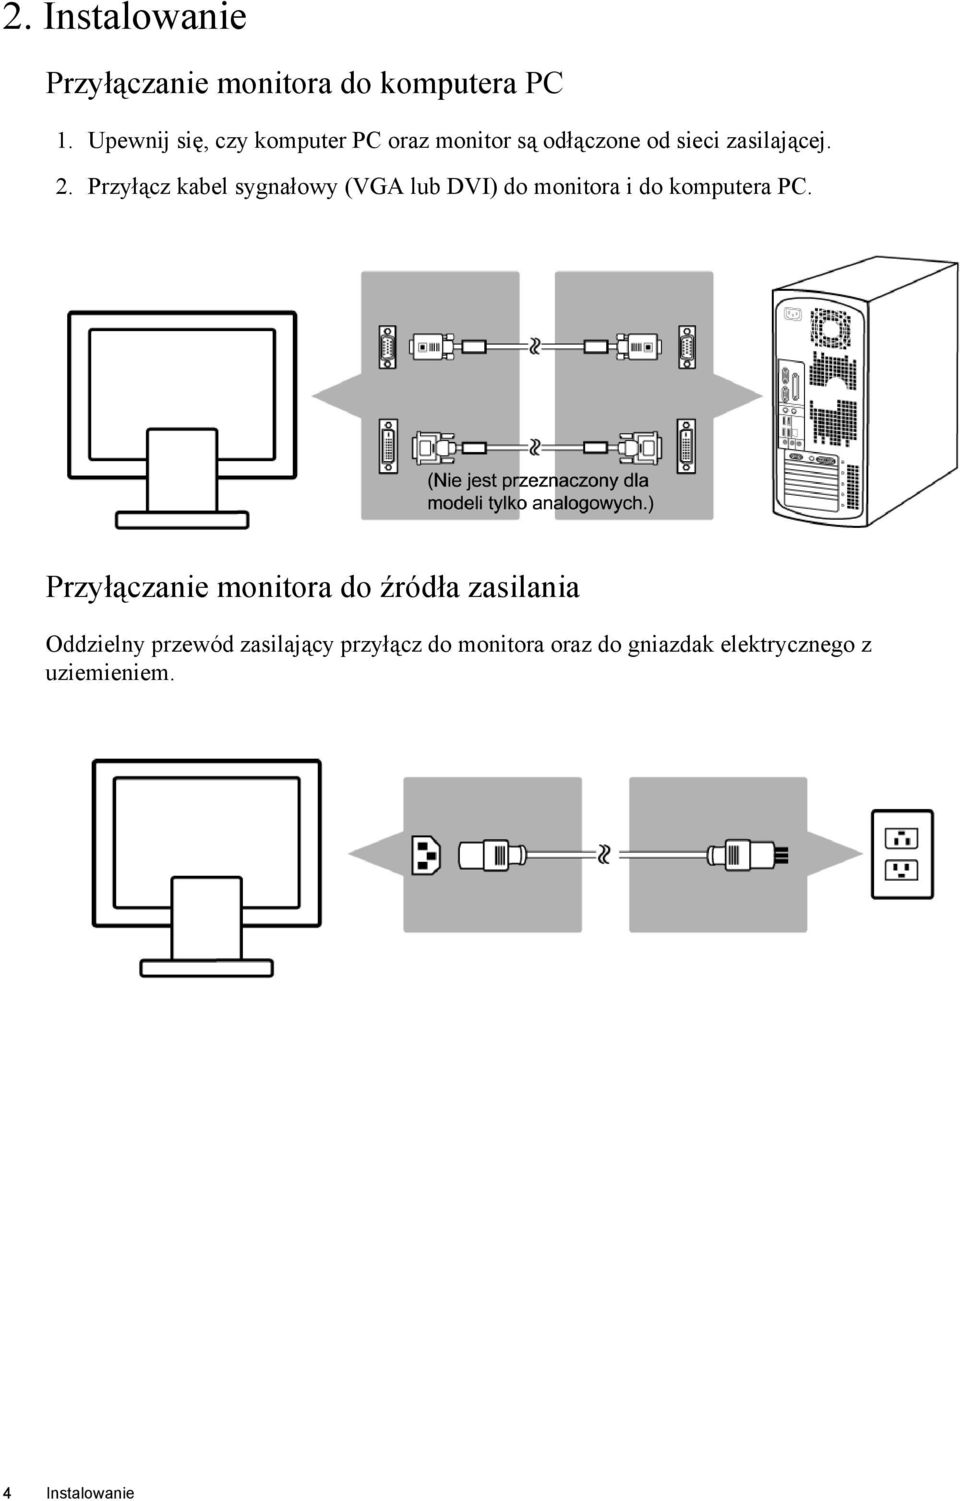 Przyłącz kabel sygnałowy (VGA lub DVI) do monitora i do komputera PC.